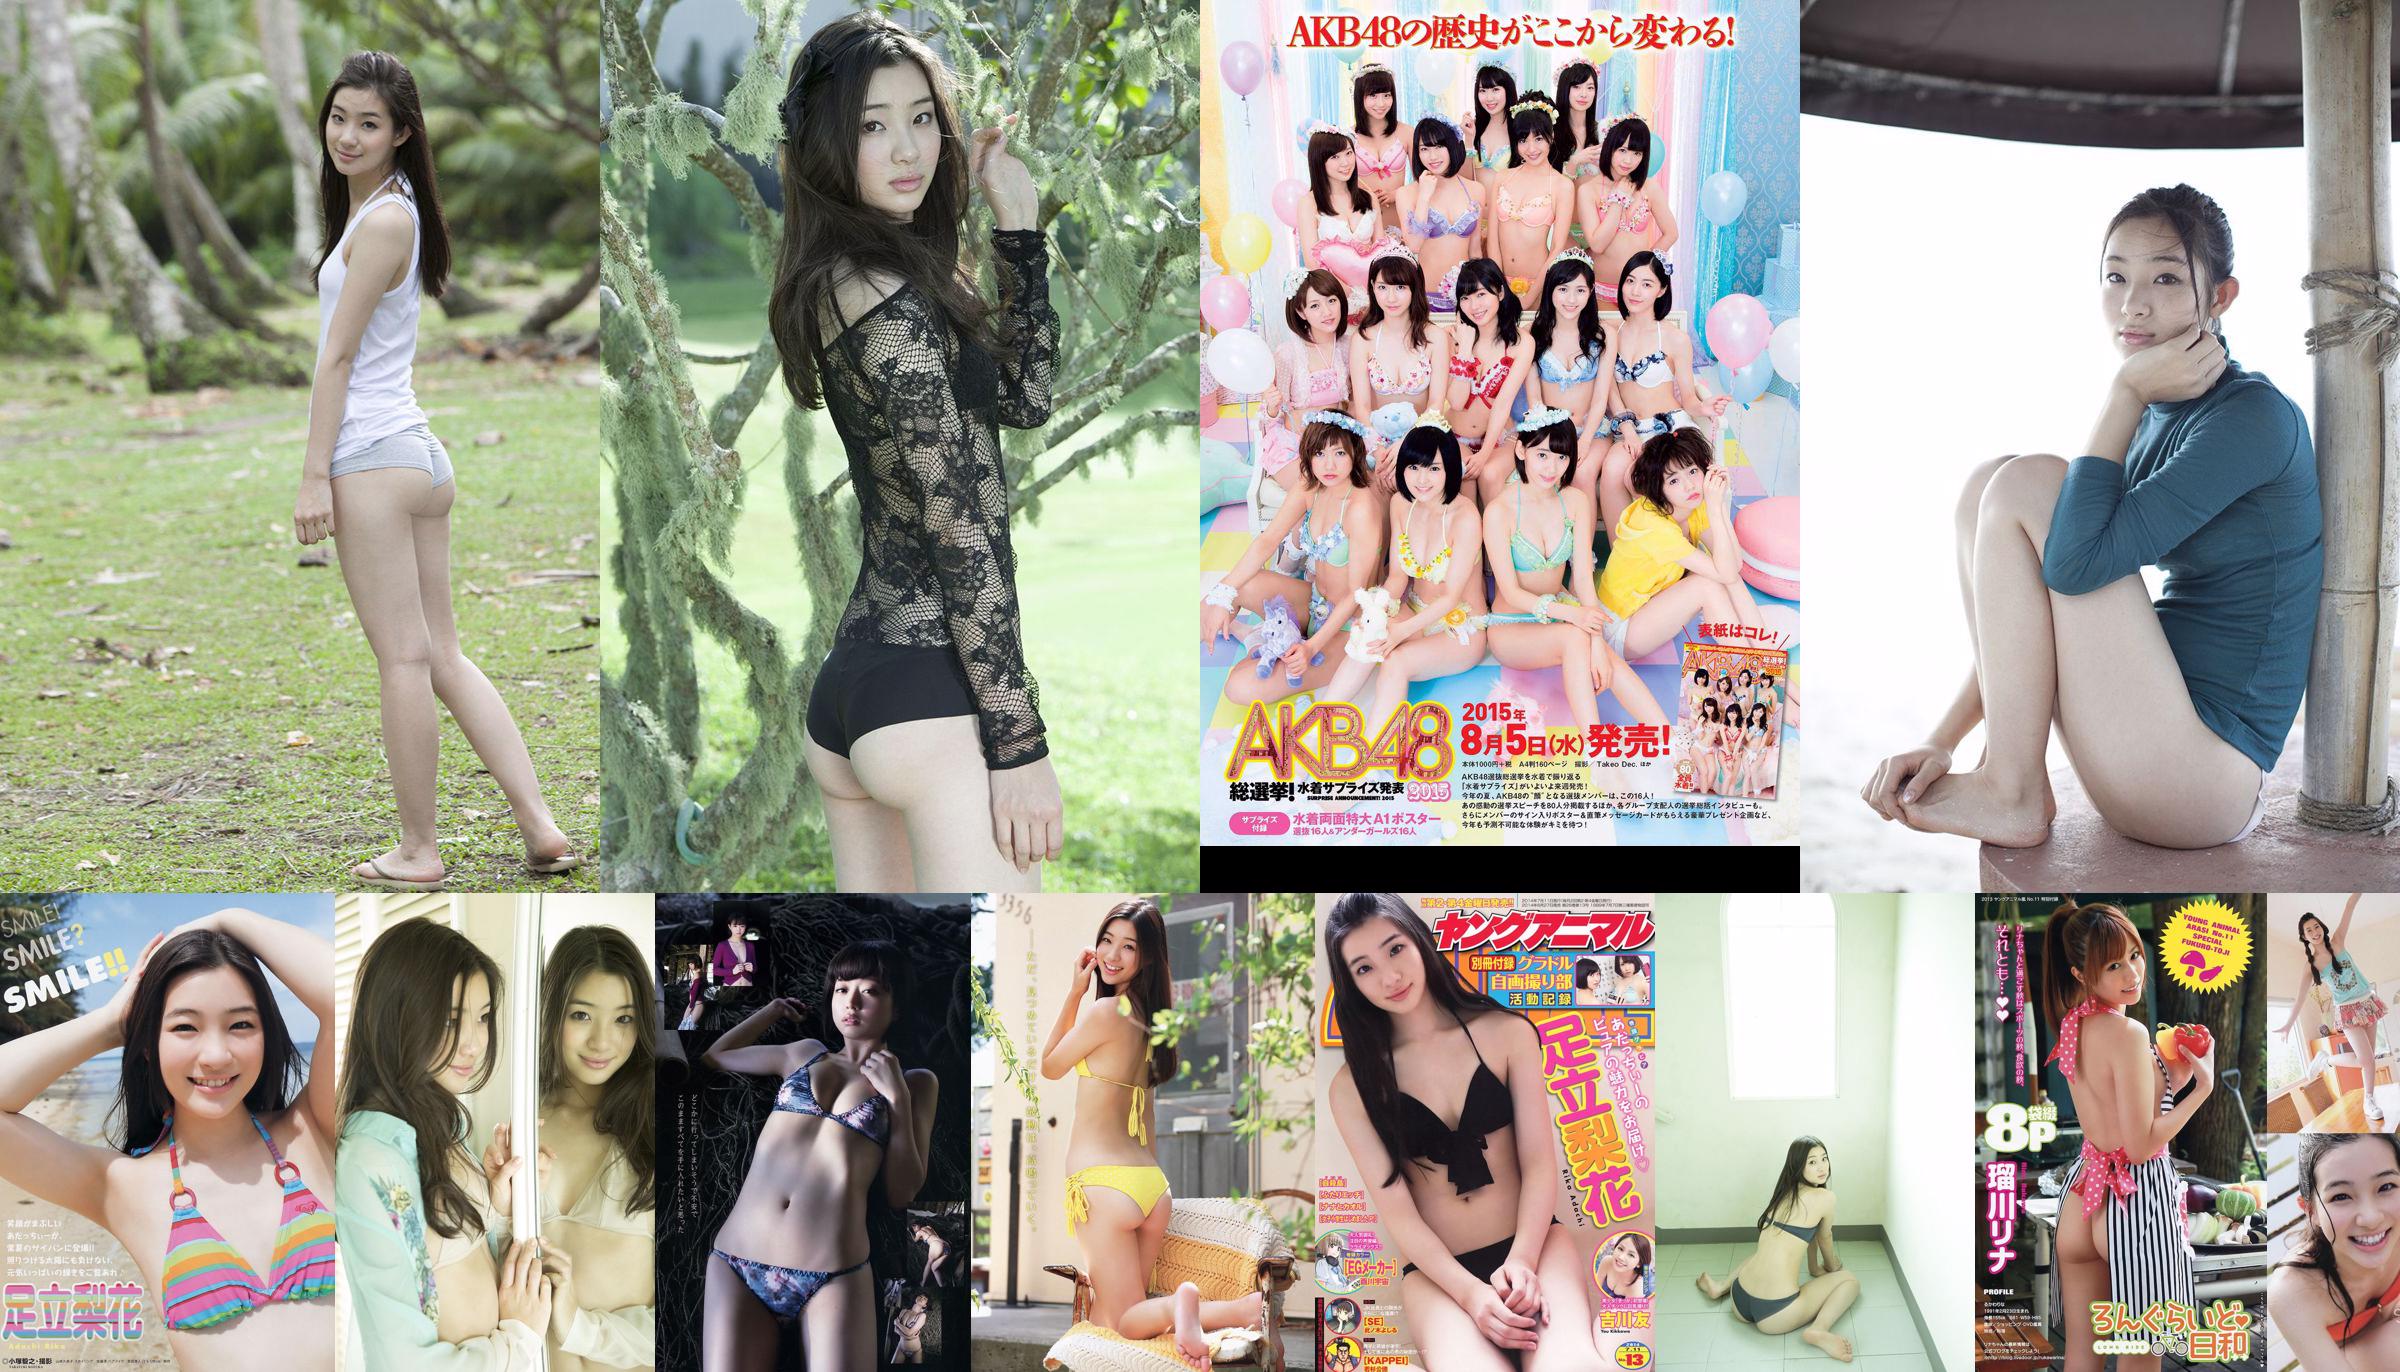 Rika Adachi Yuko Shimizu Nozomi Tachibana Asuka Kishi Rio Uchida [Playboy Mingguan] 2015 No.32 Foto Toshi No.2952b2 Halaman 1